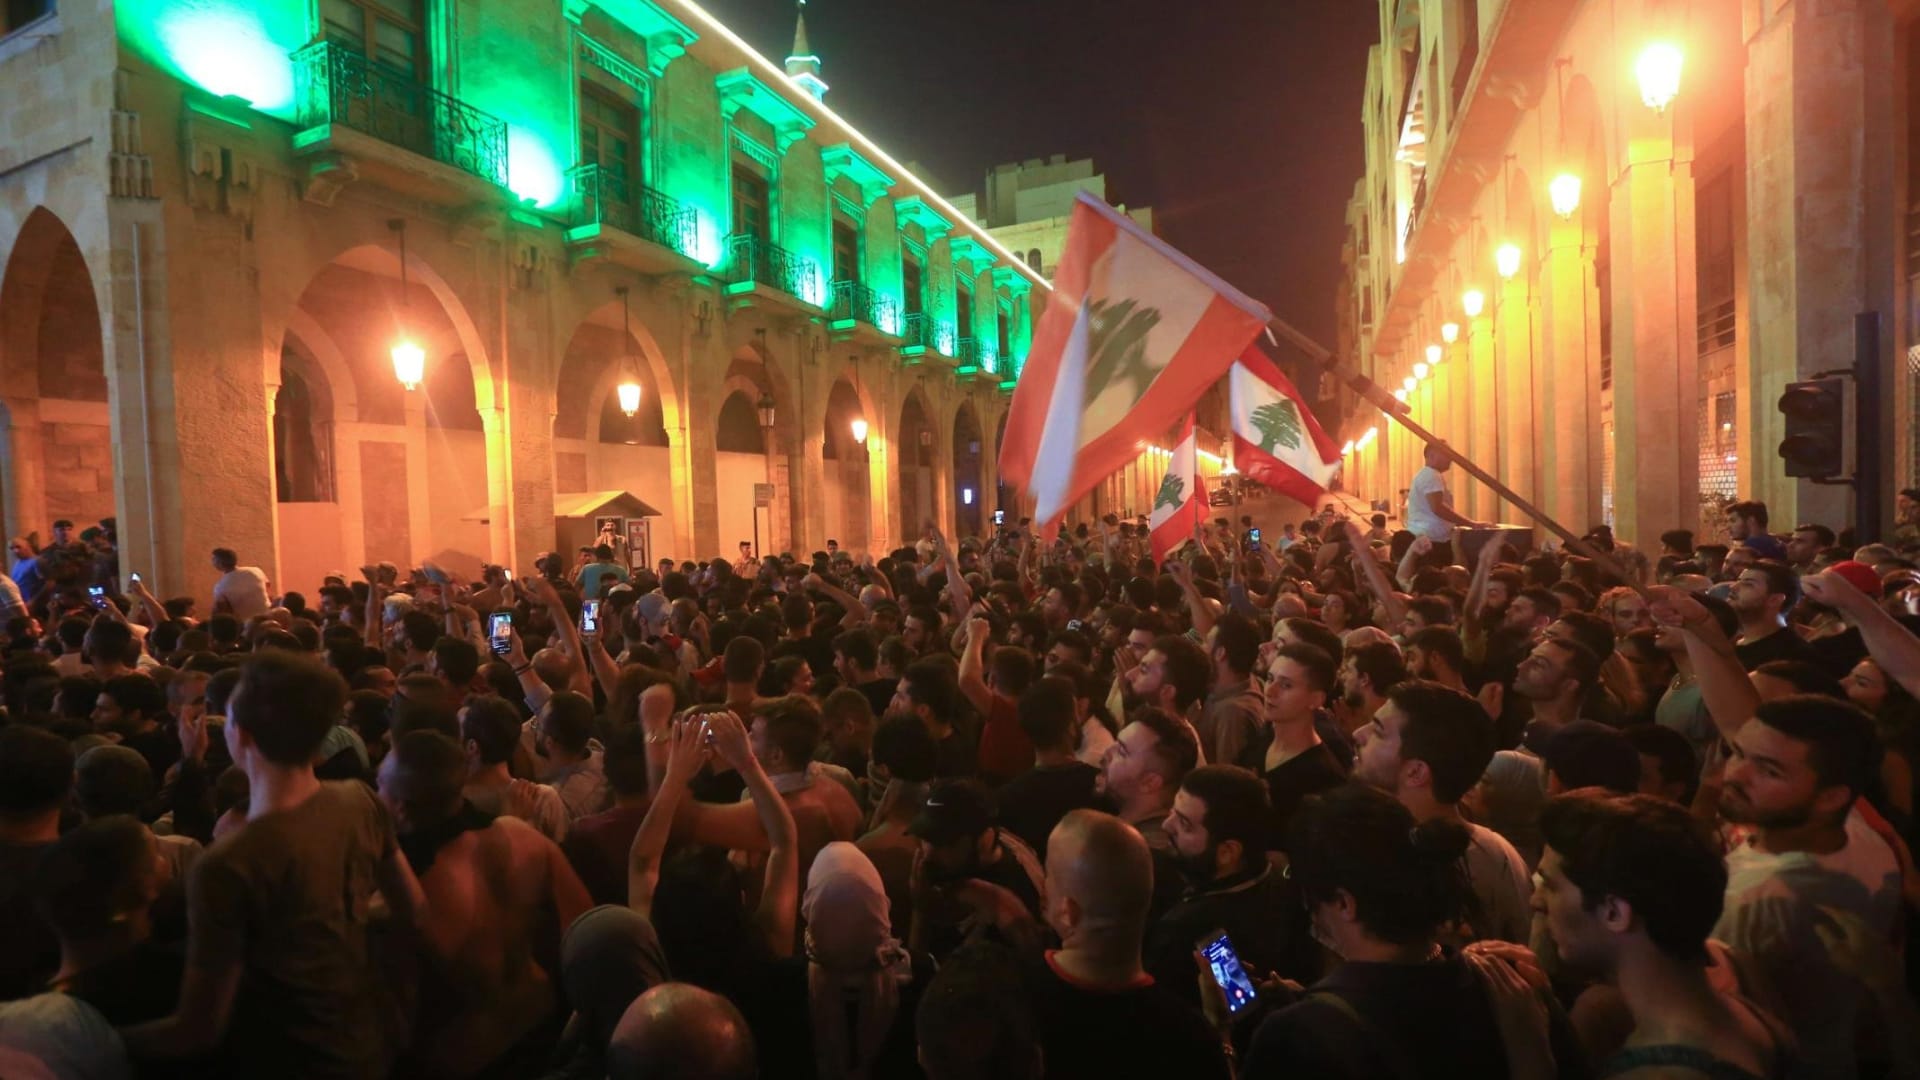 أعمال شغب وهتافات تطالب برحيل حكومة لبنان بعد خطاب الحريري